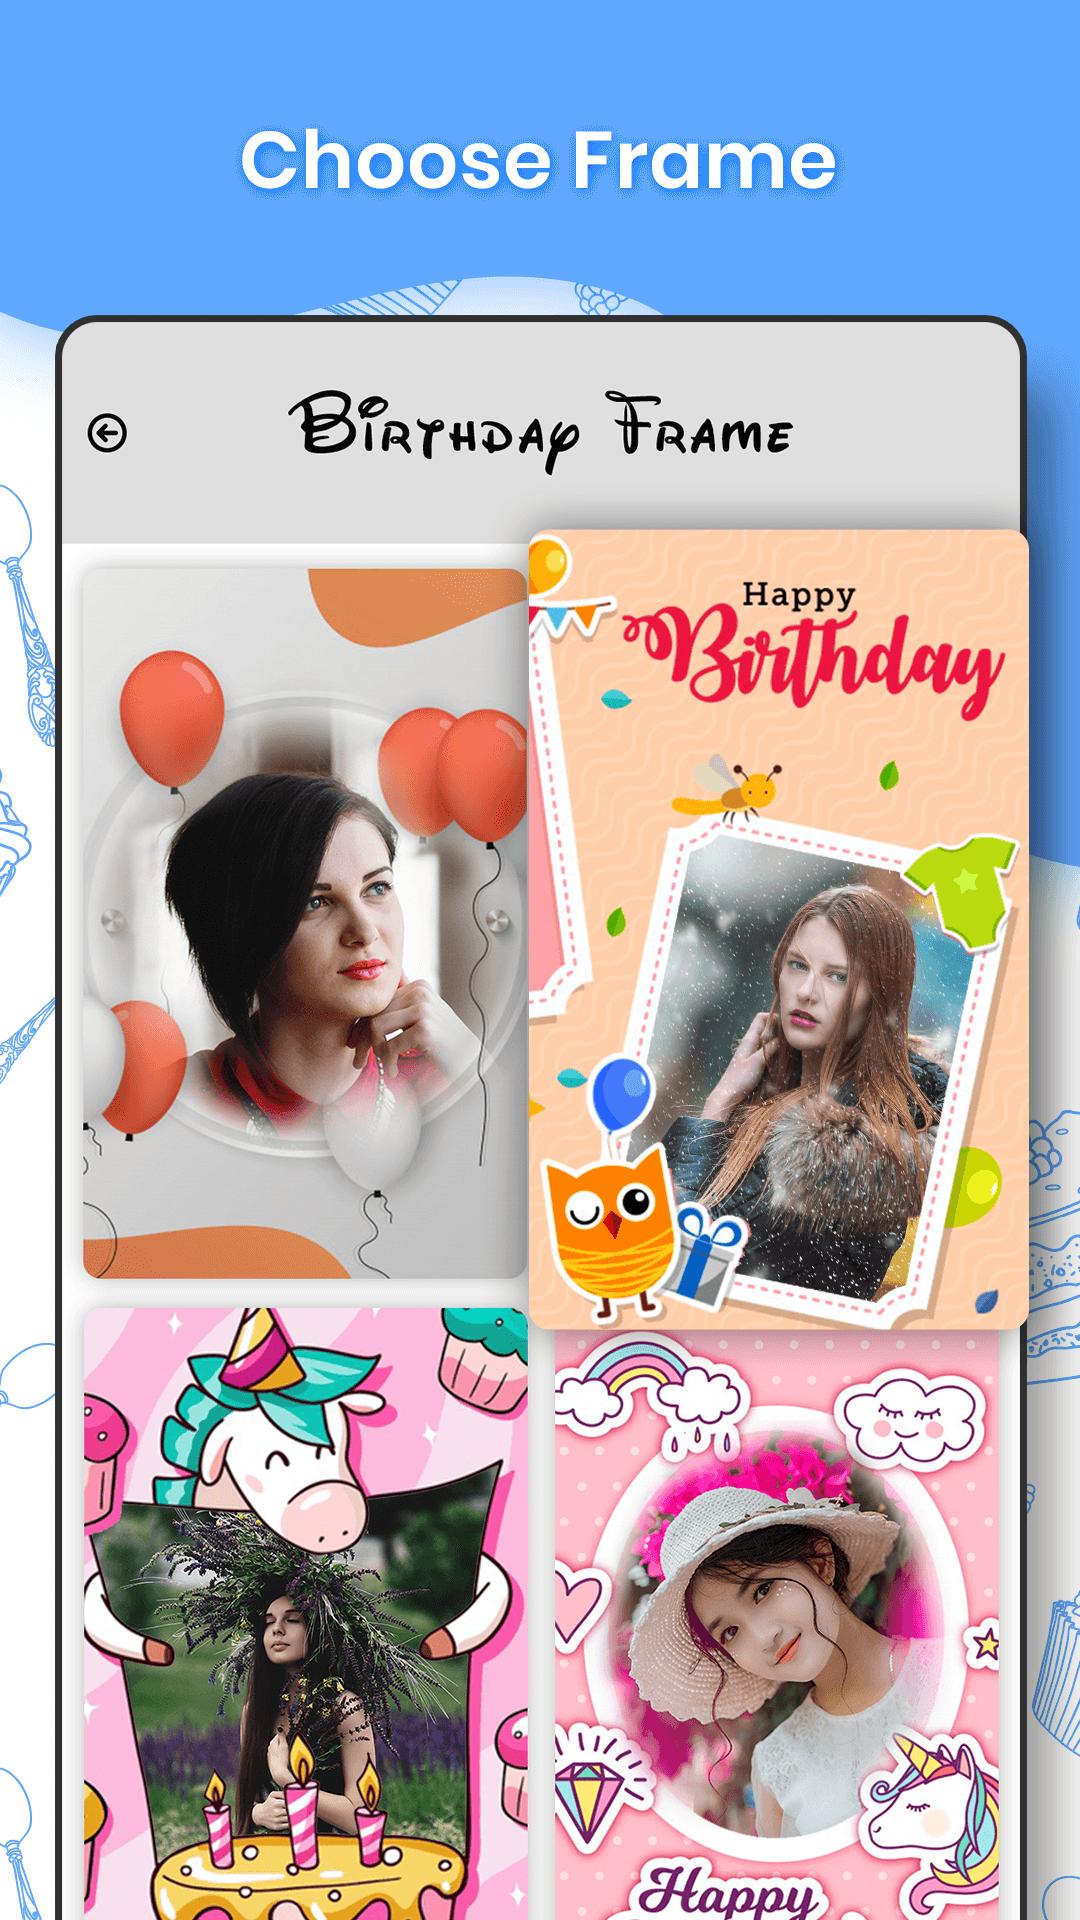 Name and photo on cake 1.0.1 Screenshot 2